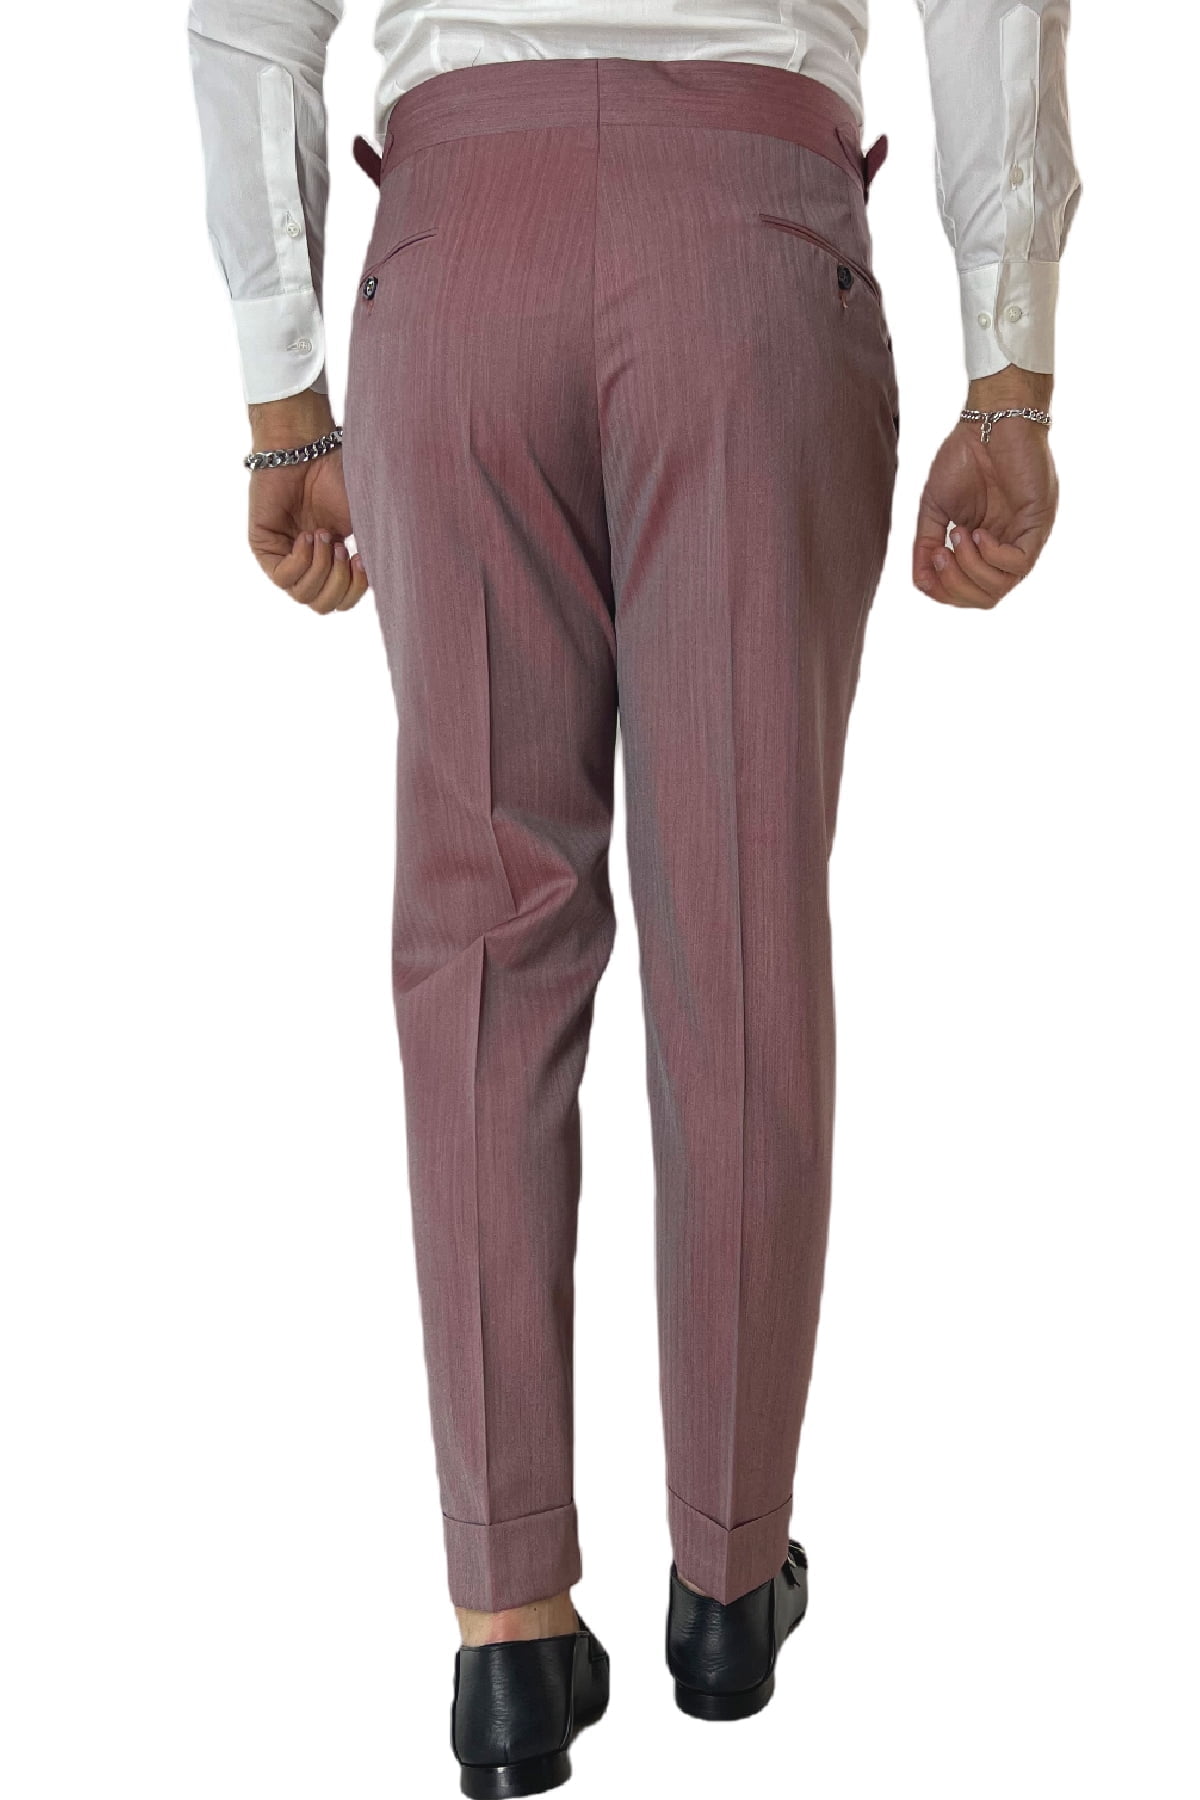 Pantalone uomo Bordeaux Solaro in fresco lana e seta Holland & Sherry vita alta con pinces fibbie laterali e risvolto 4cm